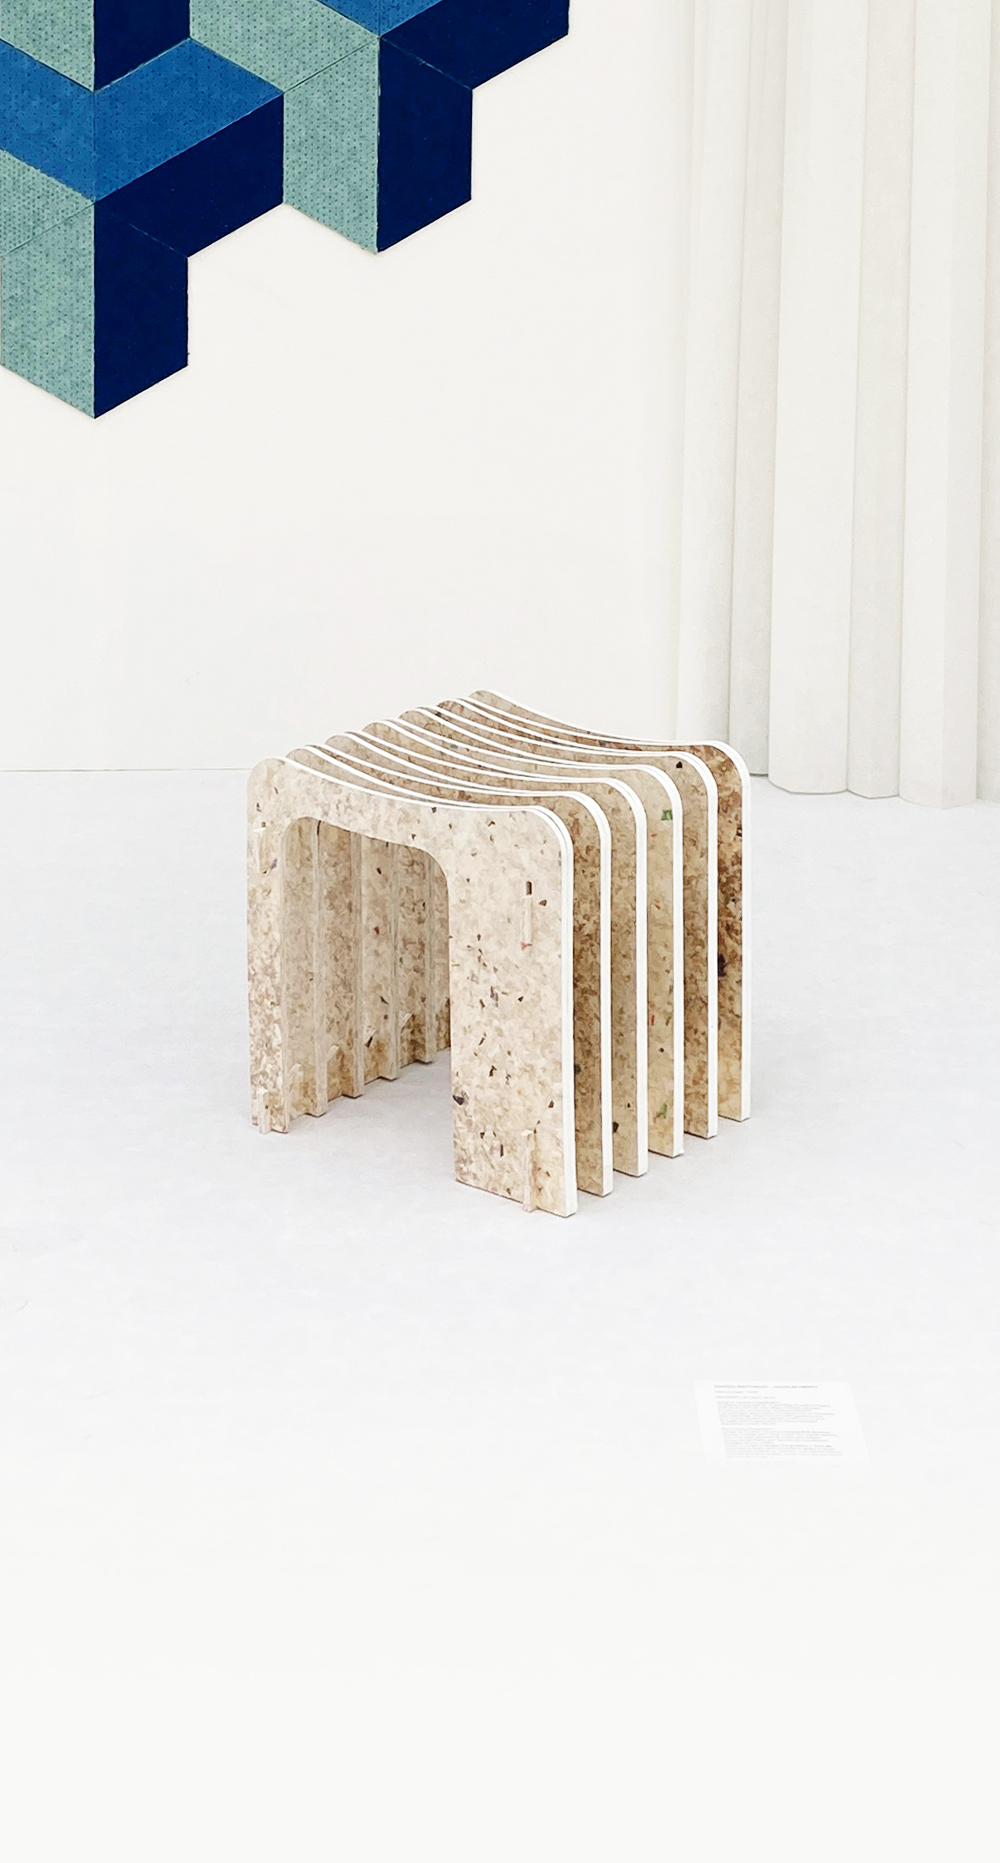 Inari stool, SoDrop 2020 Exhibition